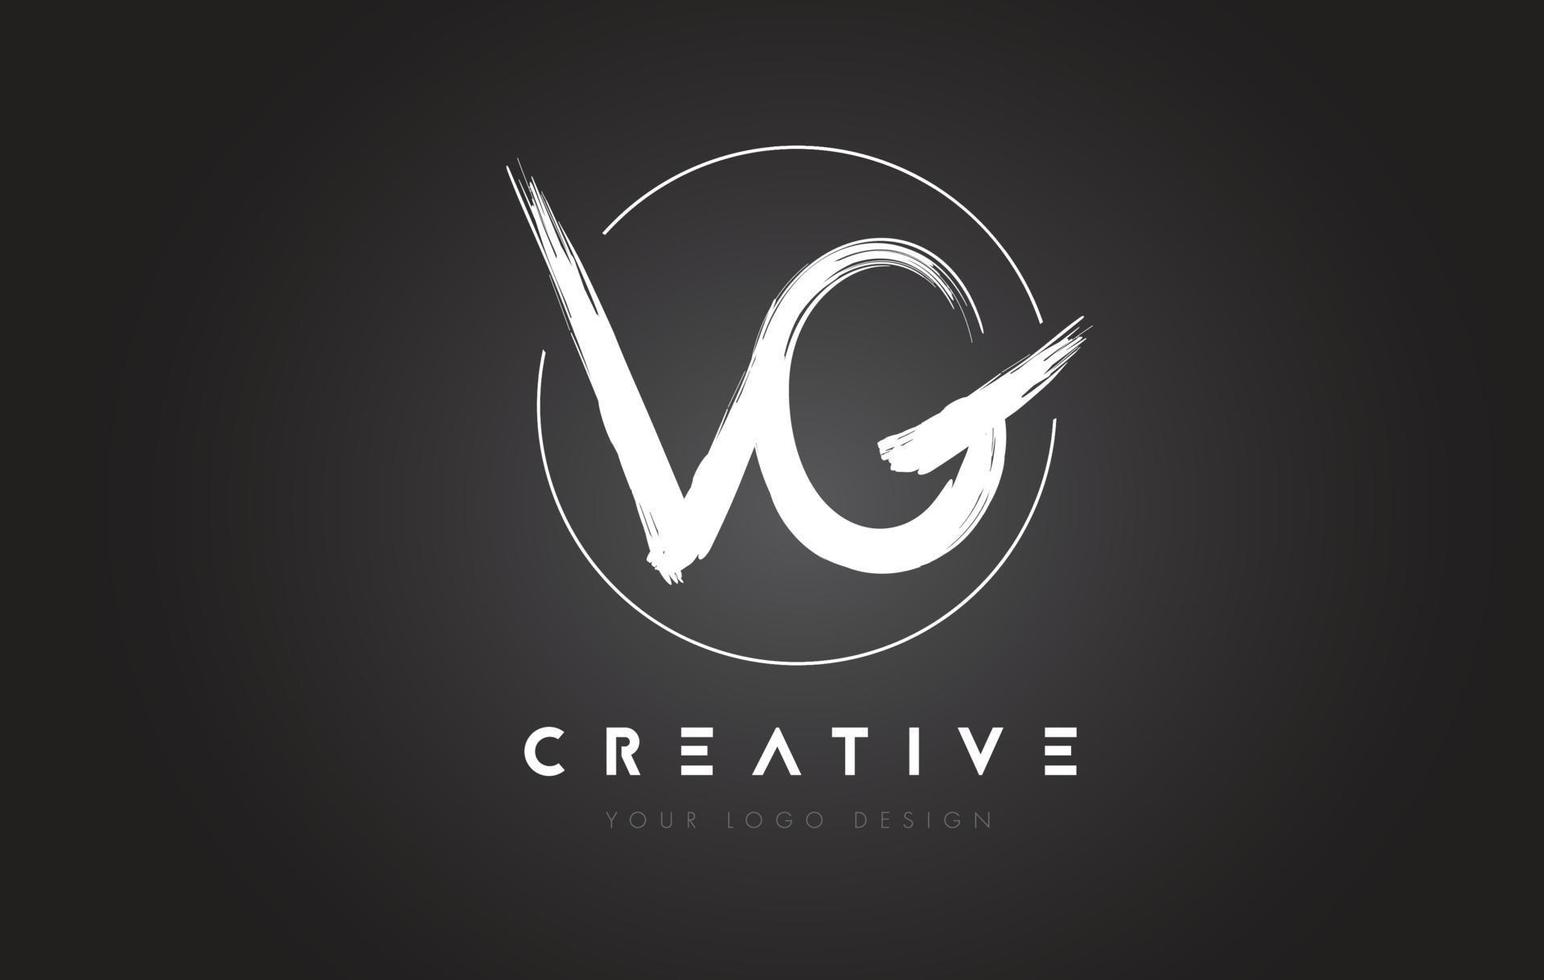 création de logo de lettre de brosse vg. concept de logo de lettres manuscrites artistiques. vecteur